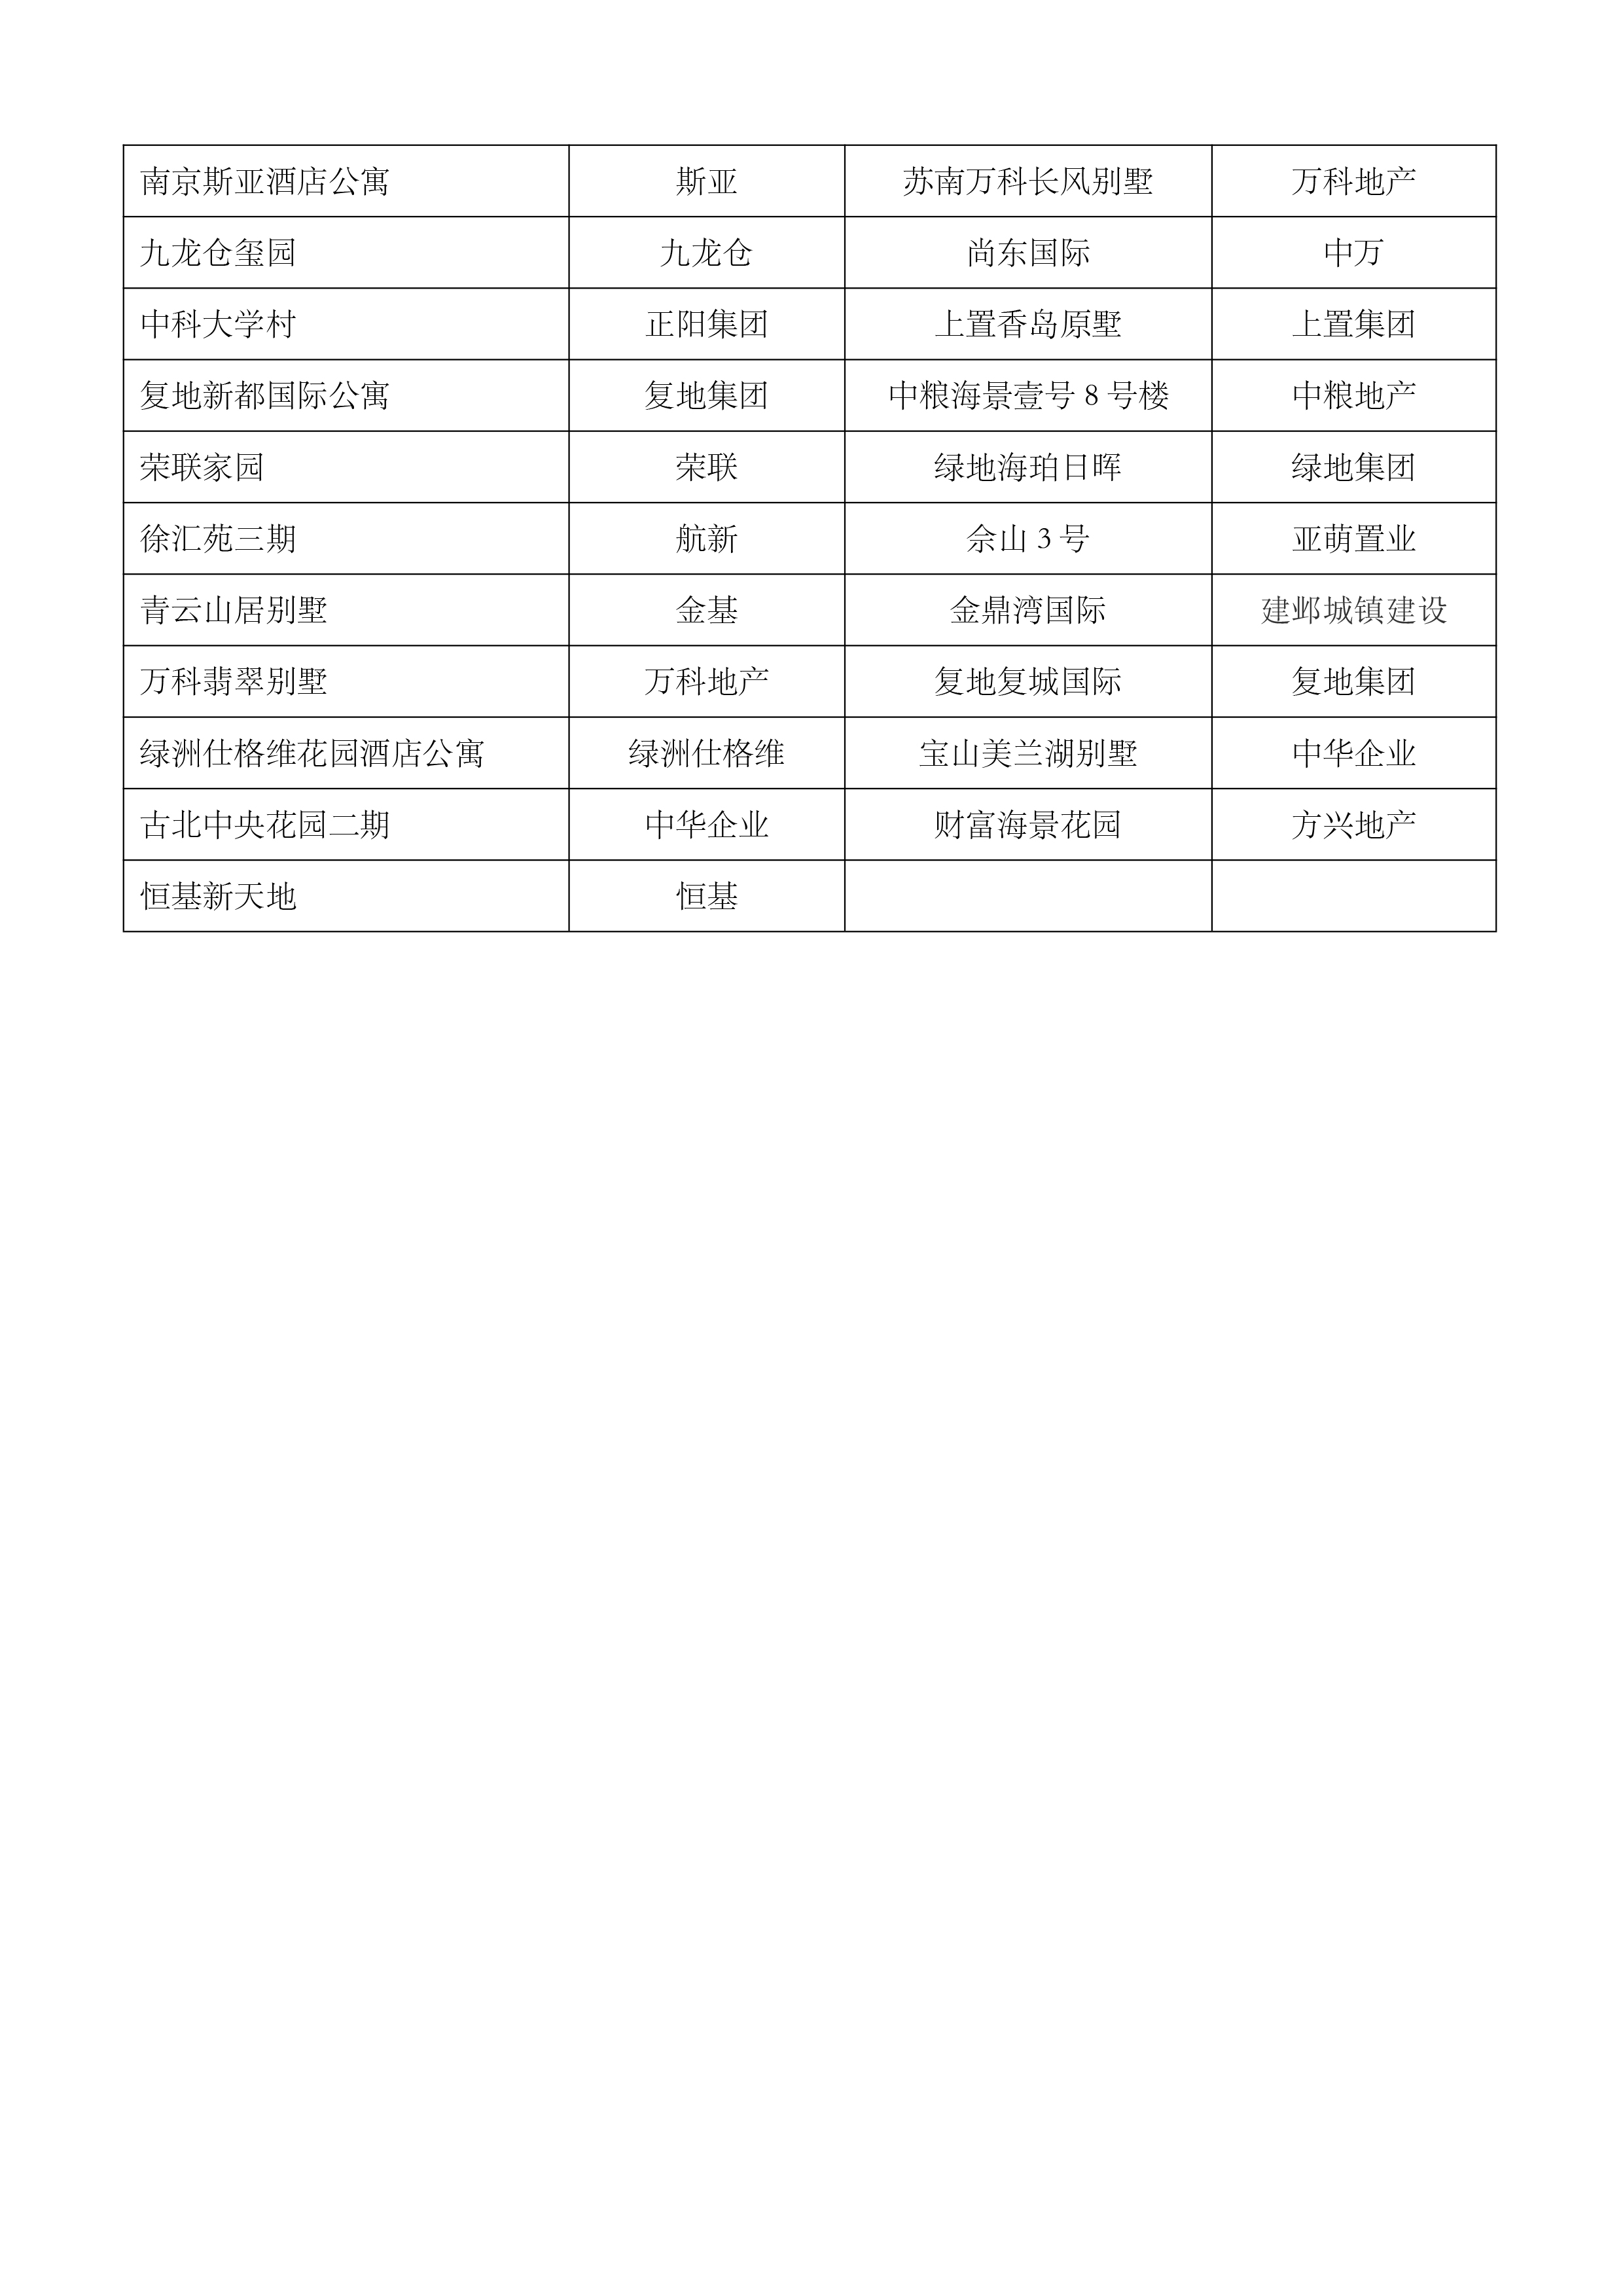 华东地区工程业绩汇总表(图2)